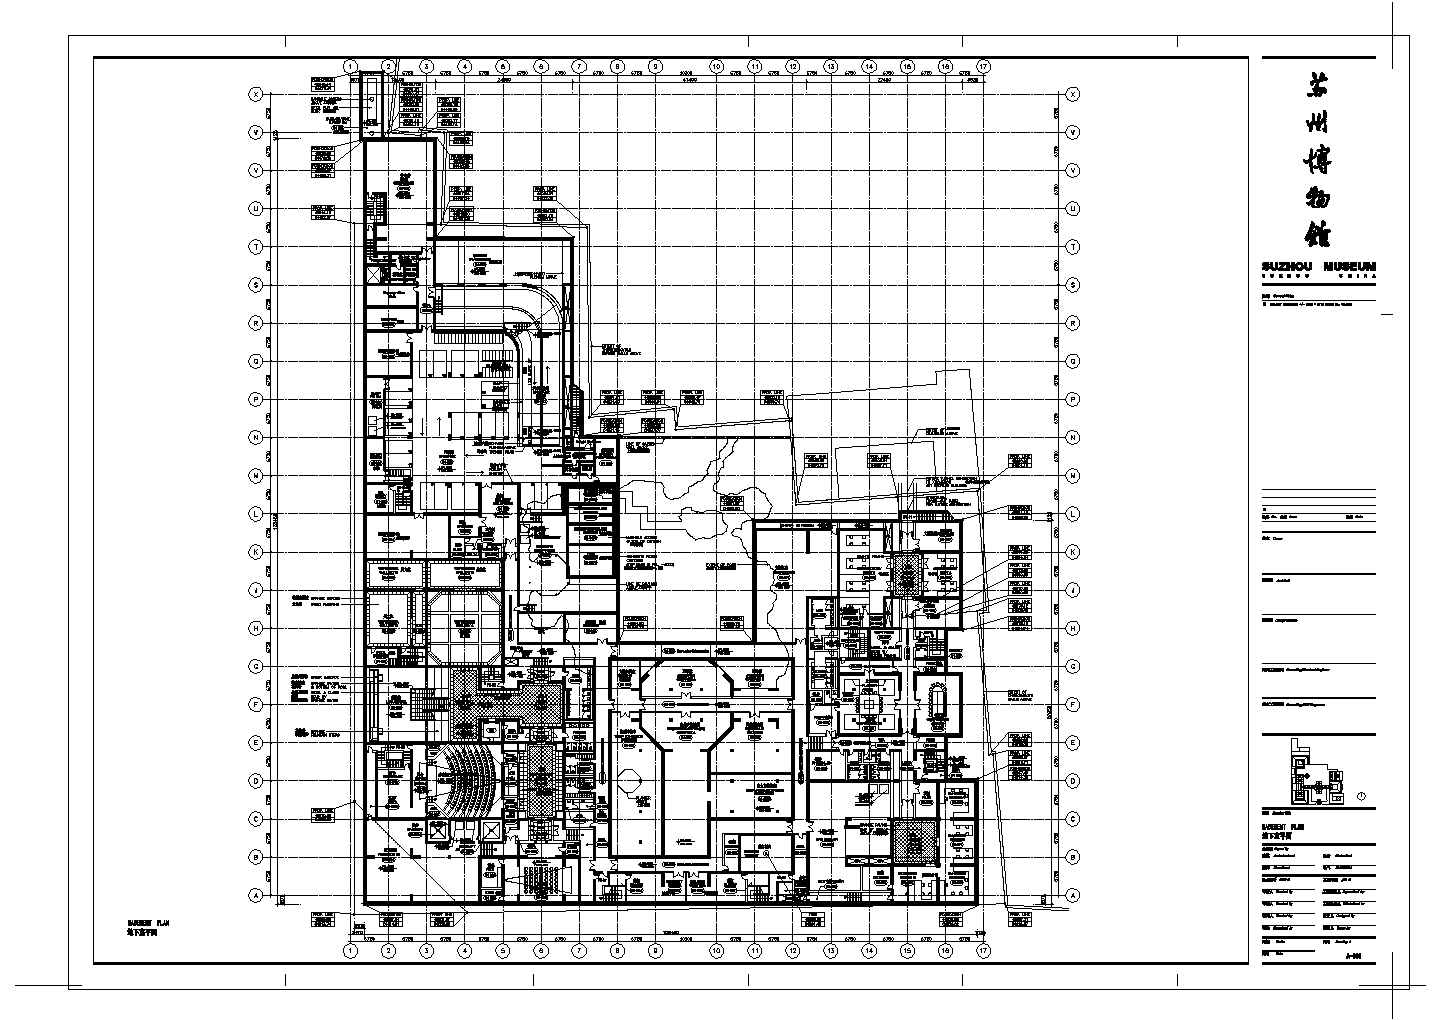 某长135.45米 宽108.45米 地下1地上2层某博物馆建筑CAD施工图地下室平面图